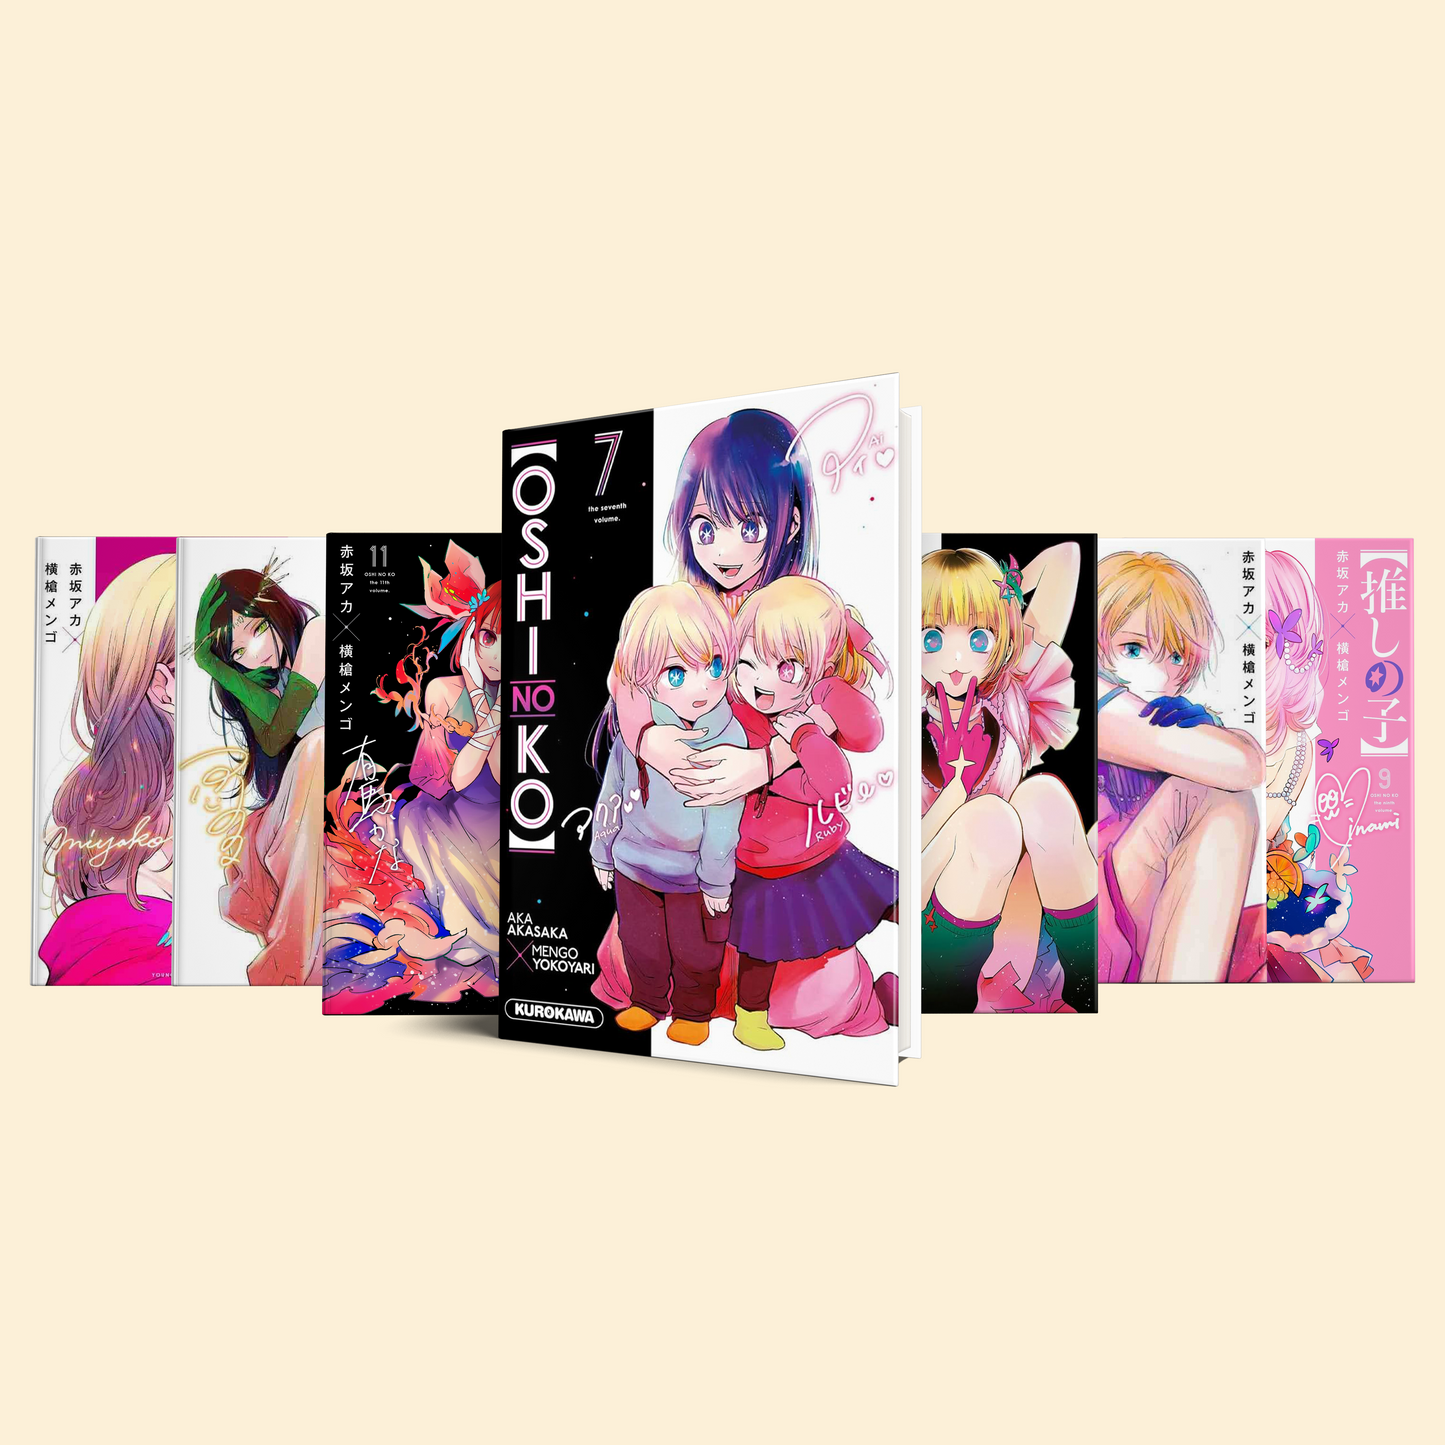 Oshi No Ko 7 Volumes (Volume 7-13)